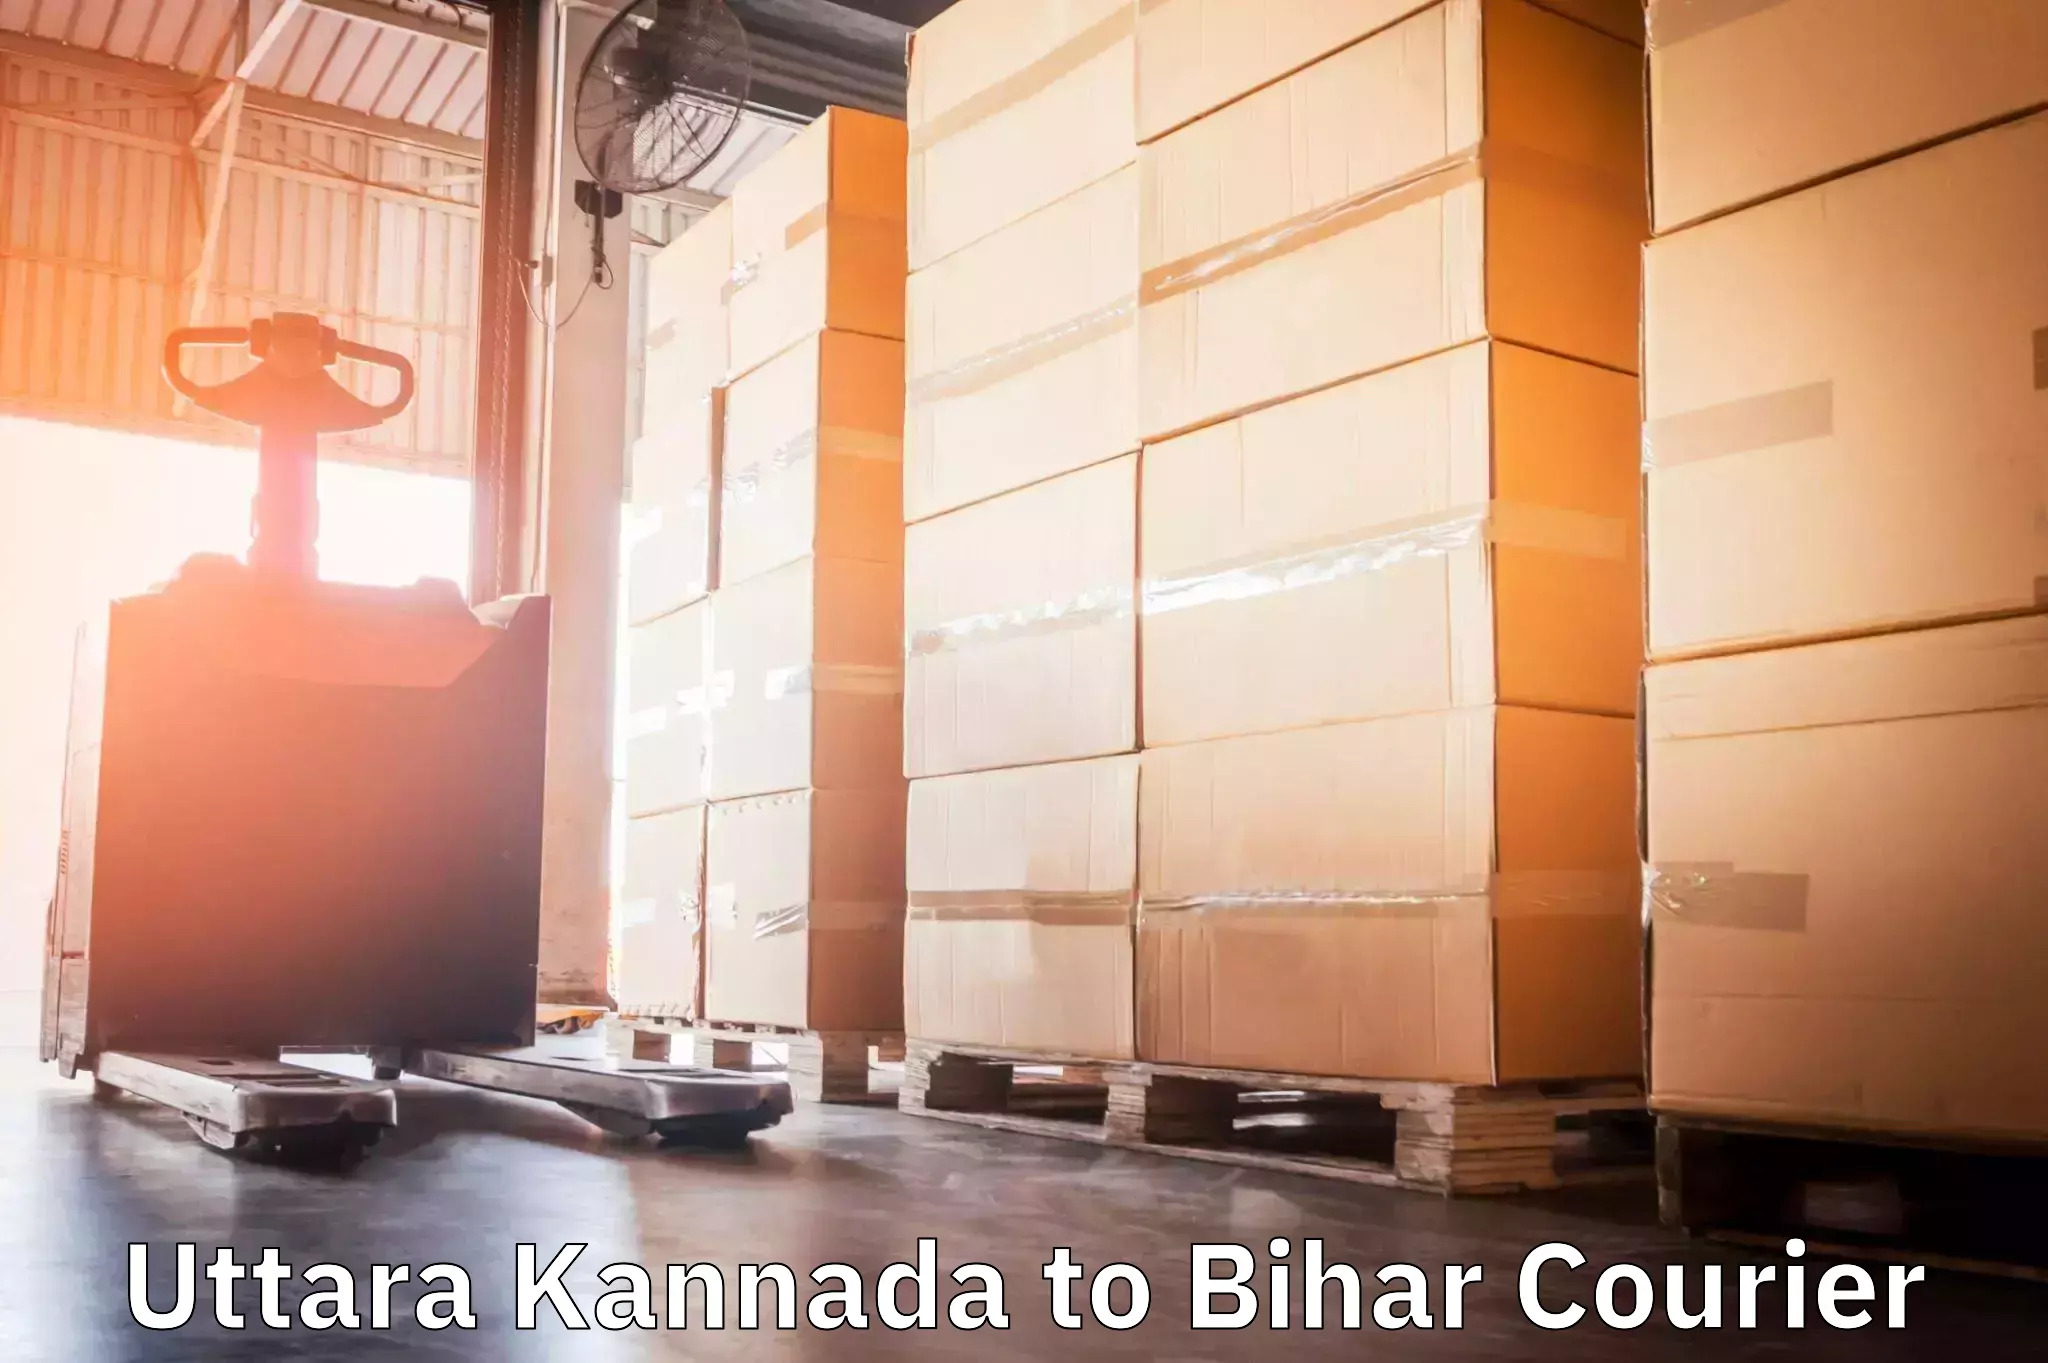 Efficient cargo handling Uttara Kannada to Bihar